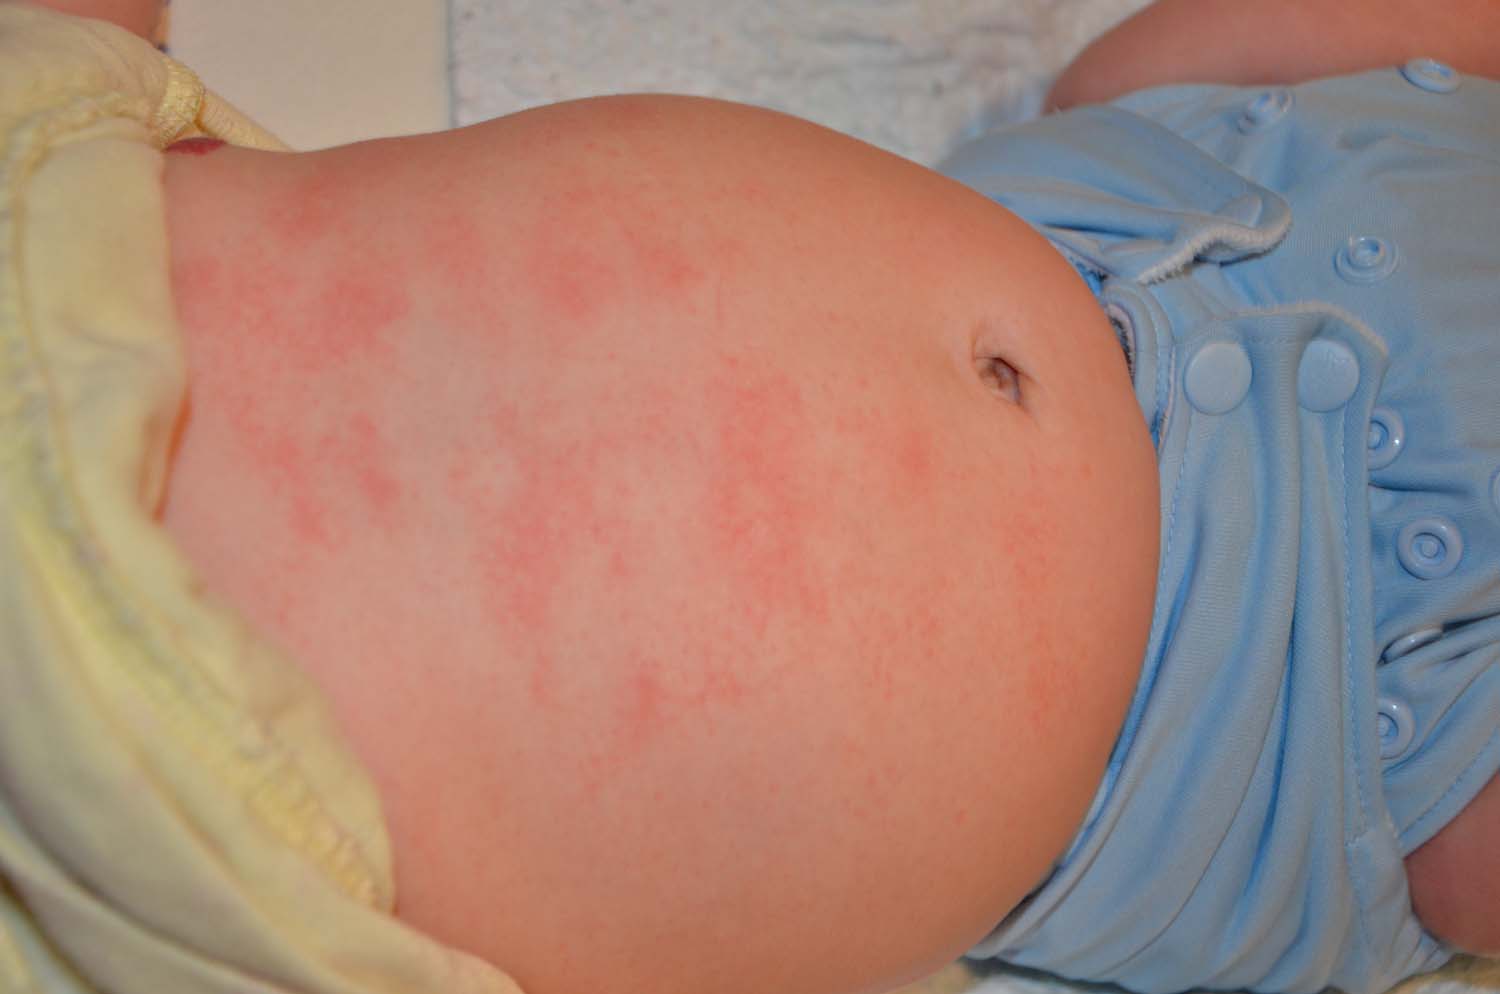 Baby has constant skin rash